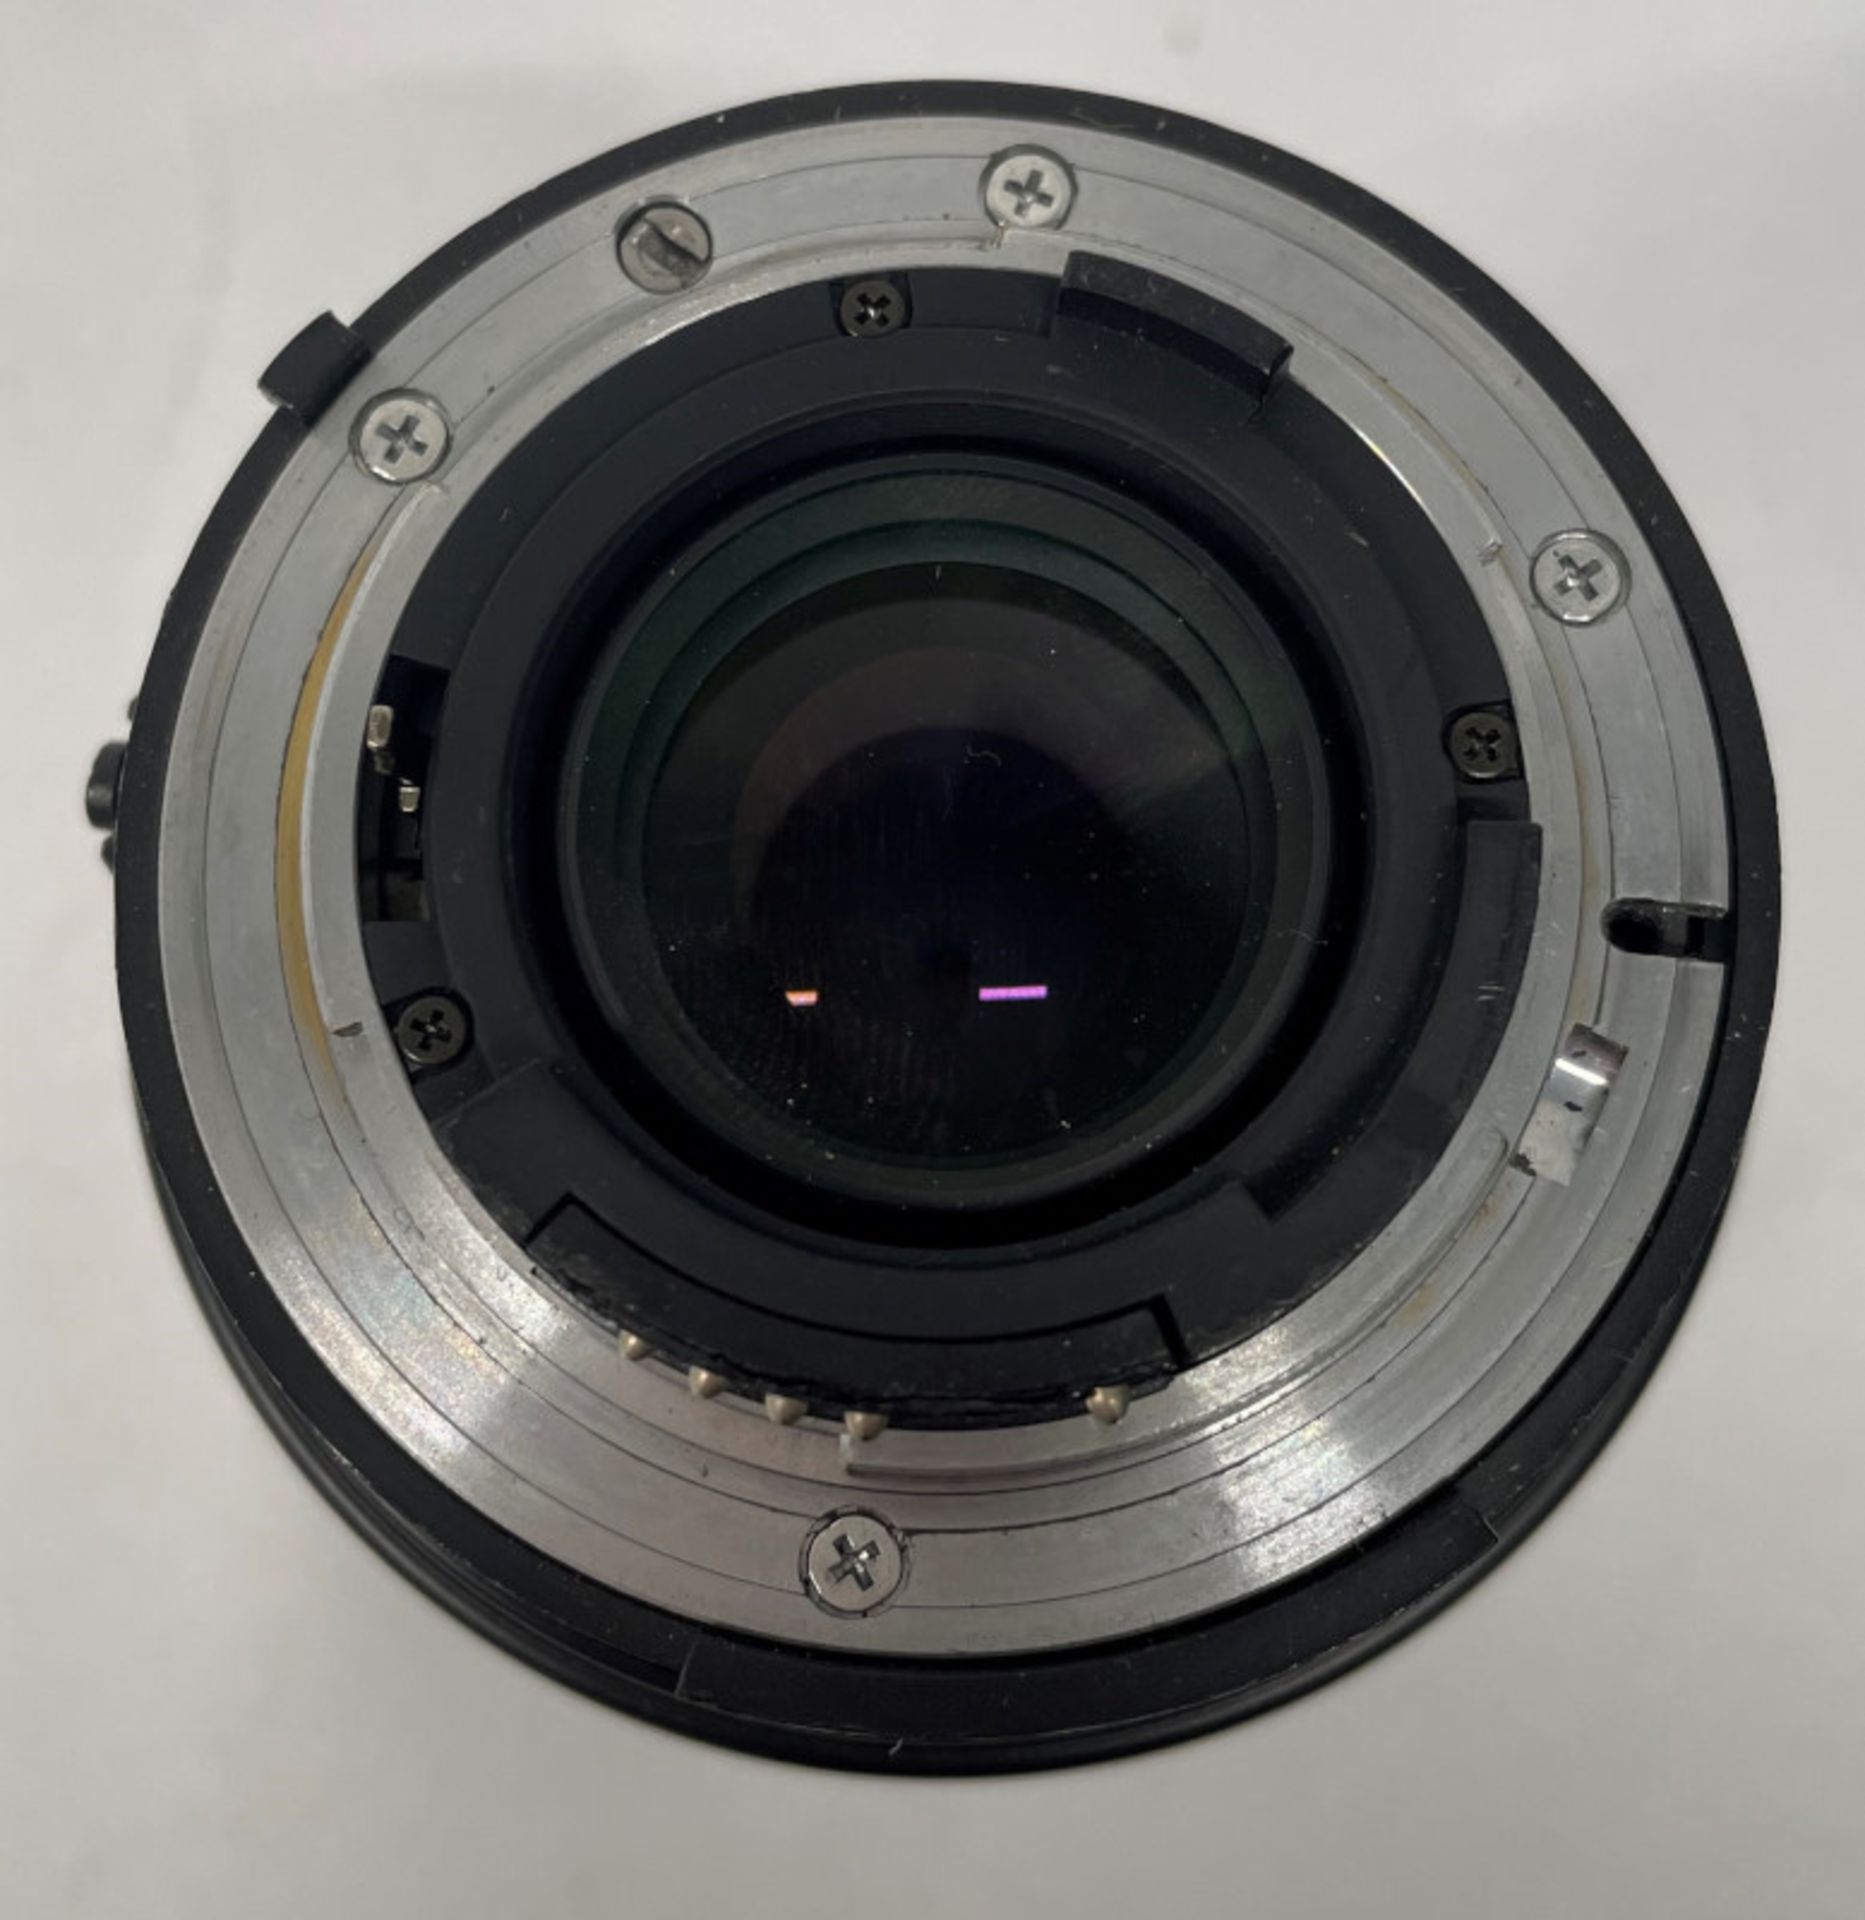 Nikon AF Nikkor 70-210mm - 1:4-5.6 Lens - Serial No. 2569312 with HOYA 62mm UV(O) Filter - Image 5 of 6